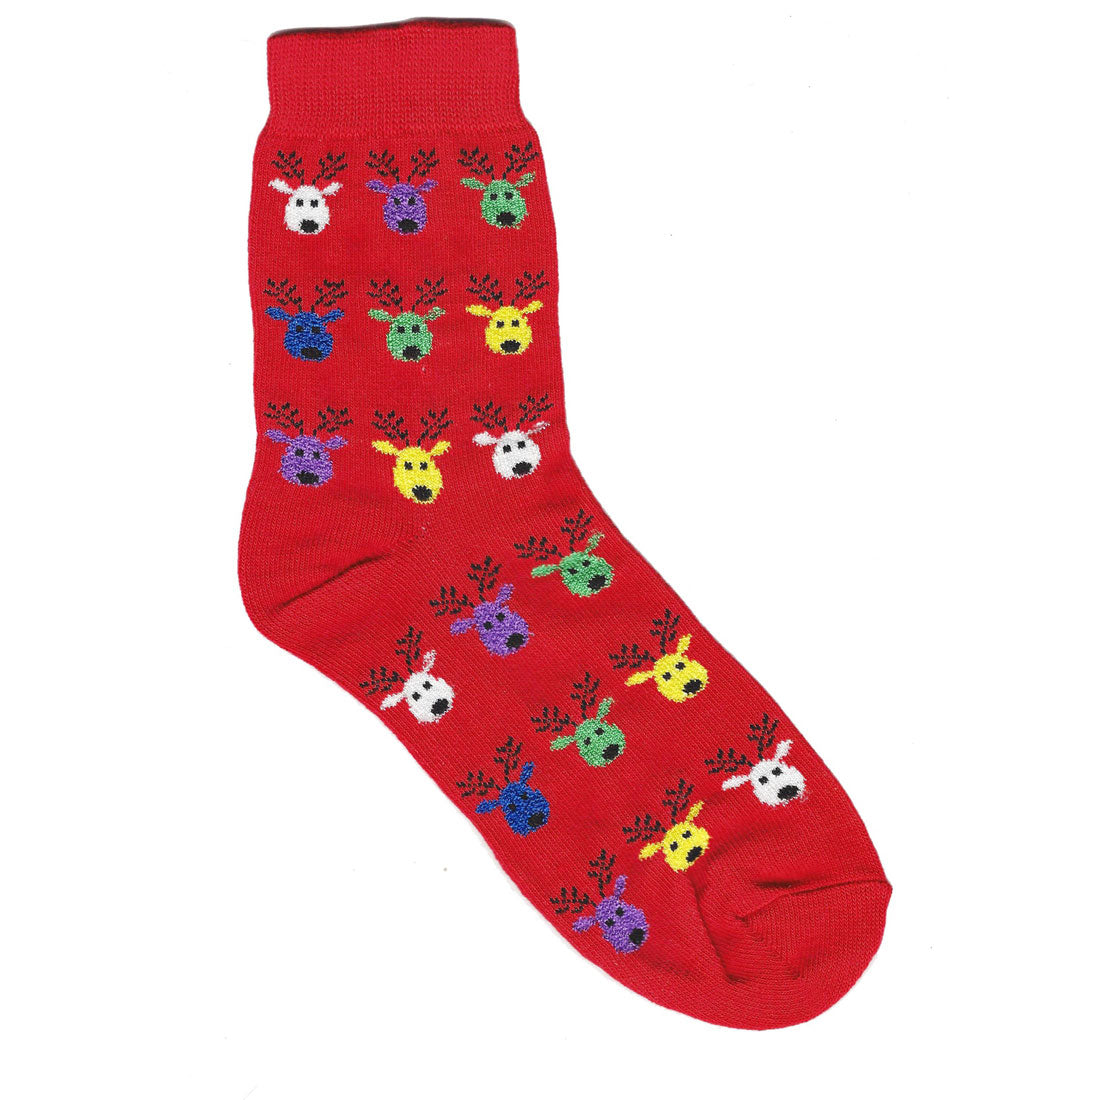 Boys Reindeer Socks by Country Kids